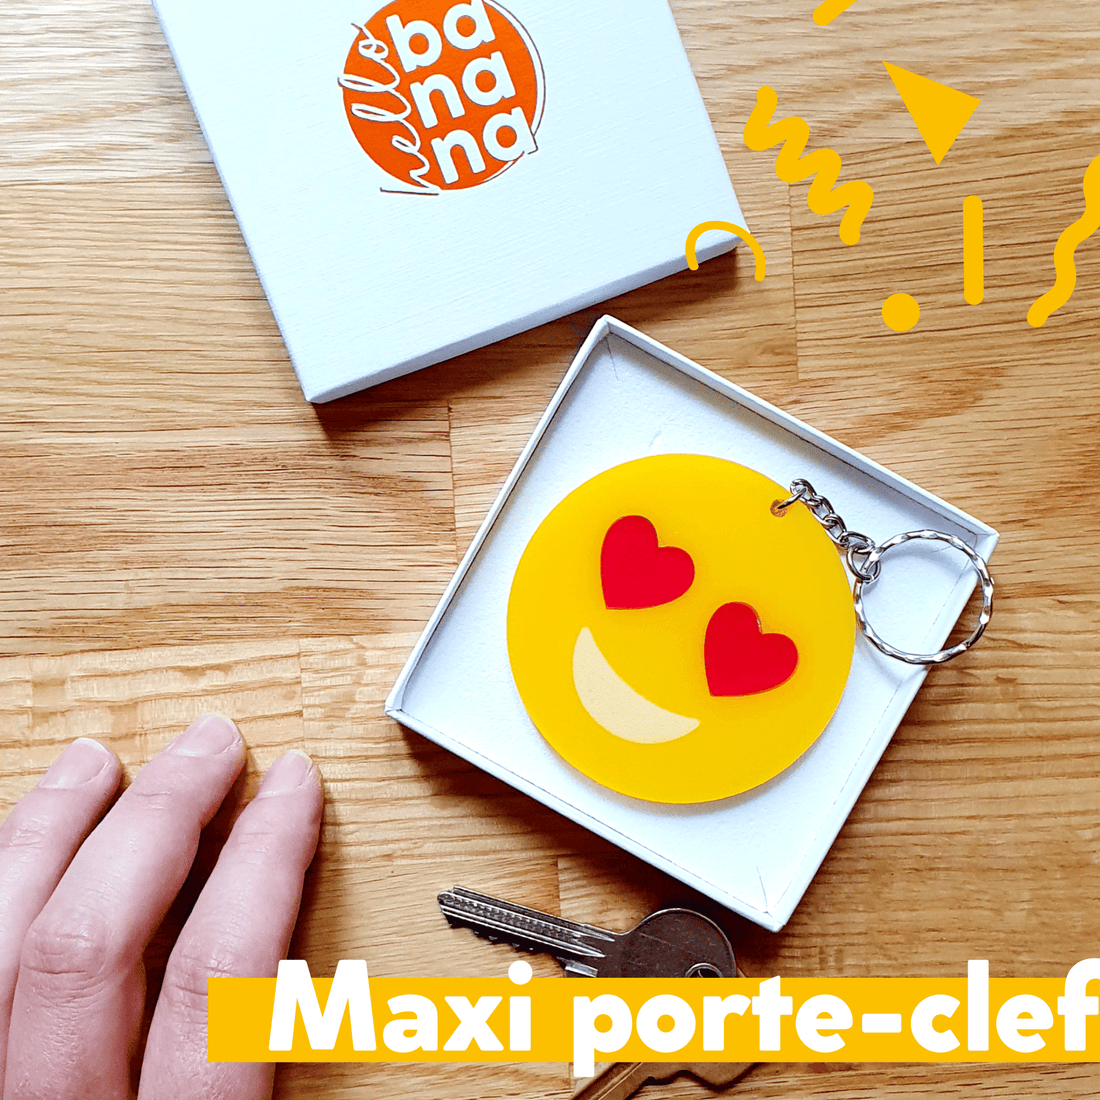 Maxi porte-clef smiley !